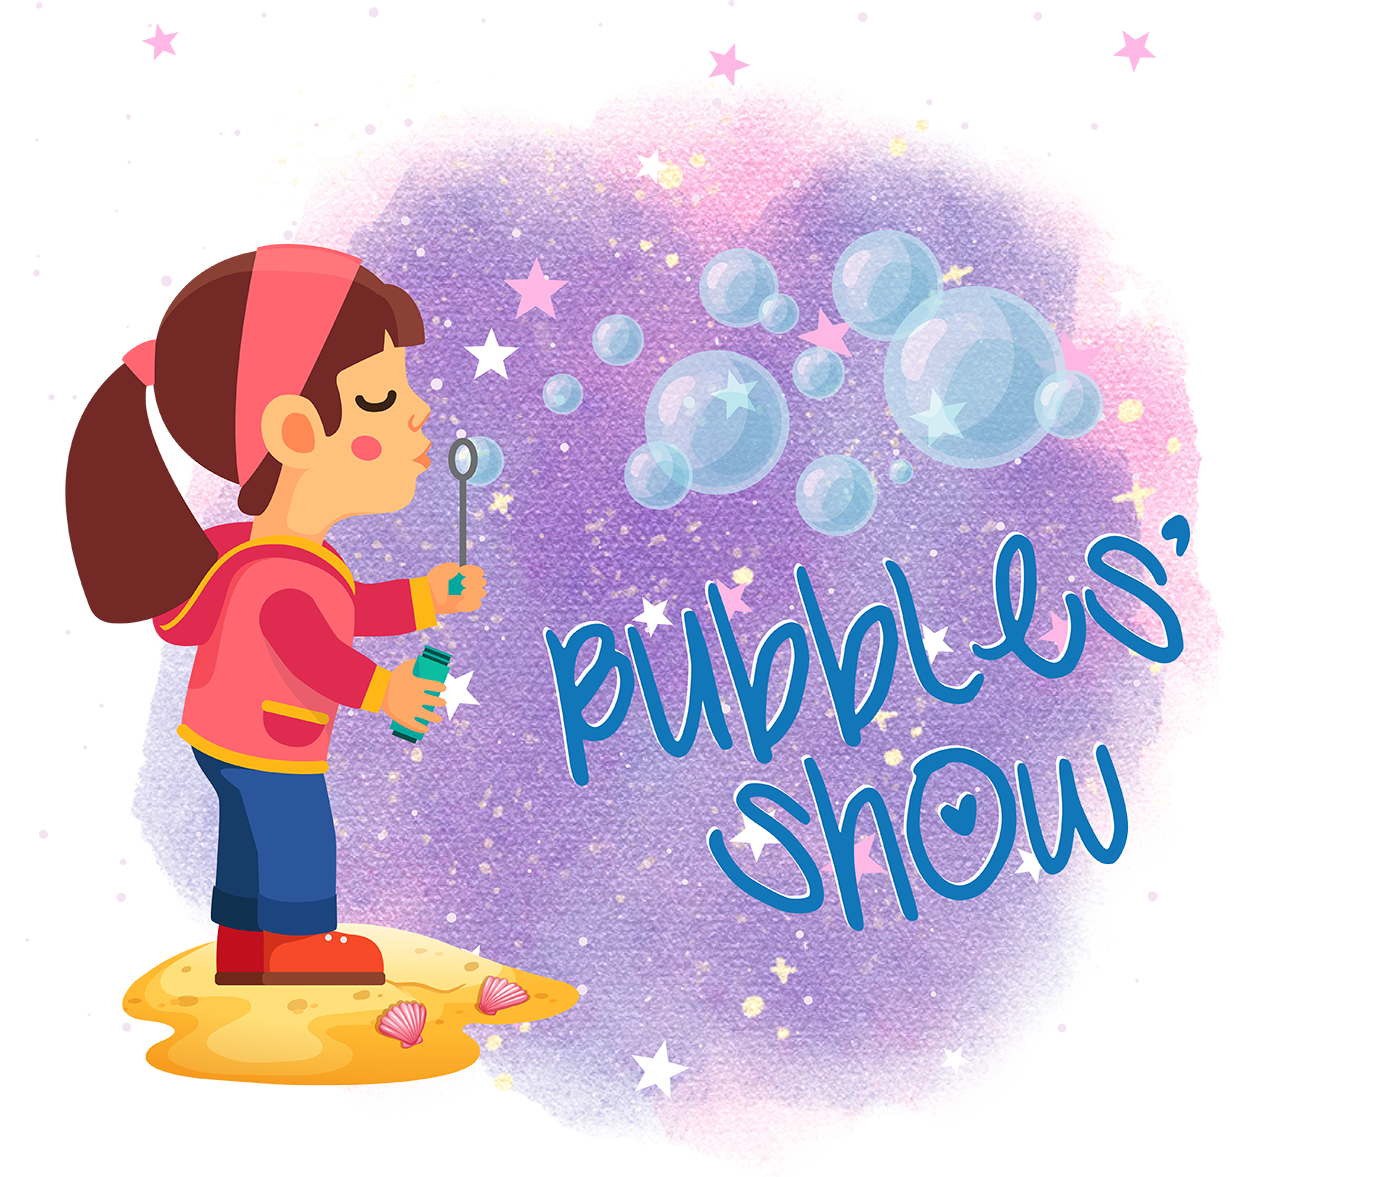 Bubbles’ Show